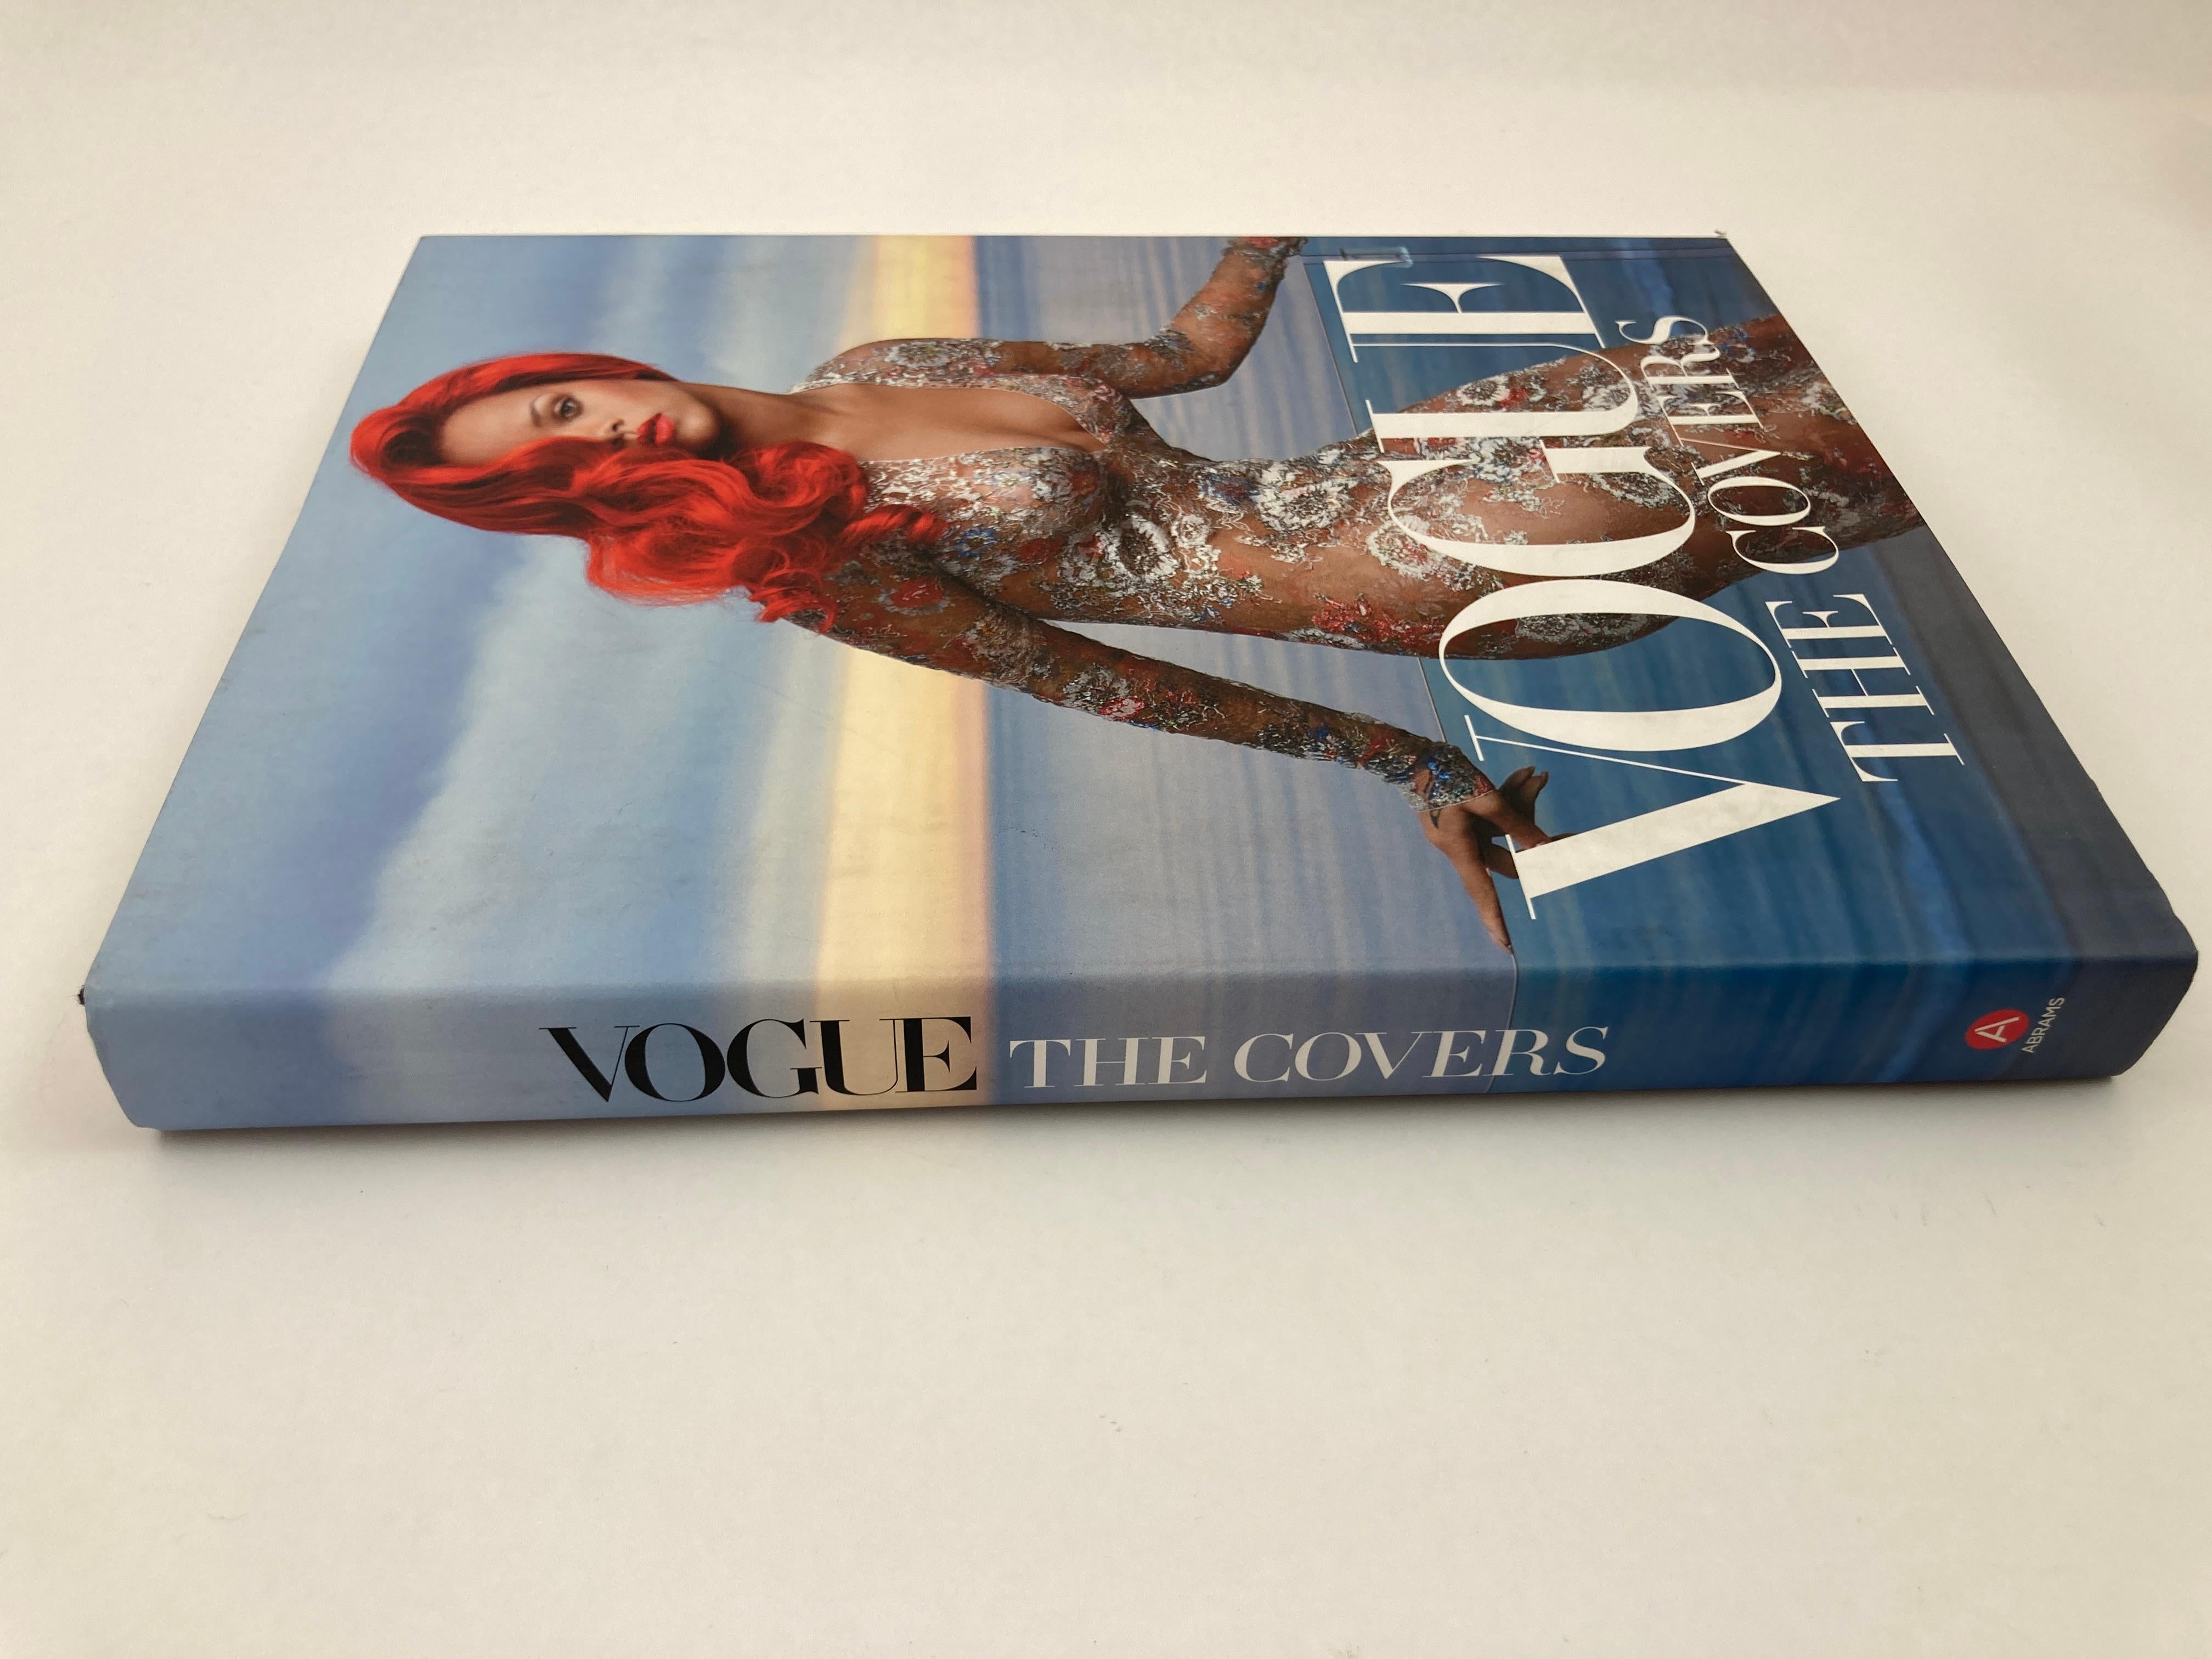 Vogue The Covers Hardcover Coffee Table Book.
Die Gründerin und Autorin der Gallery Met, Dodie Kazanjian, hat diese atemberaubende aktualisierte Ausgabe von Vogue: The Covers würdigt die Tradition von Schönheit und Exzellenz mit einer